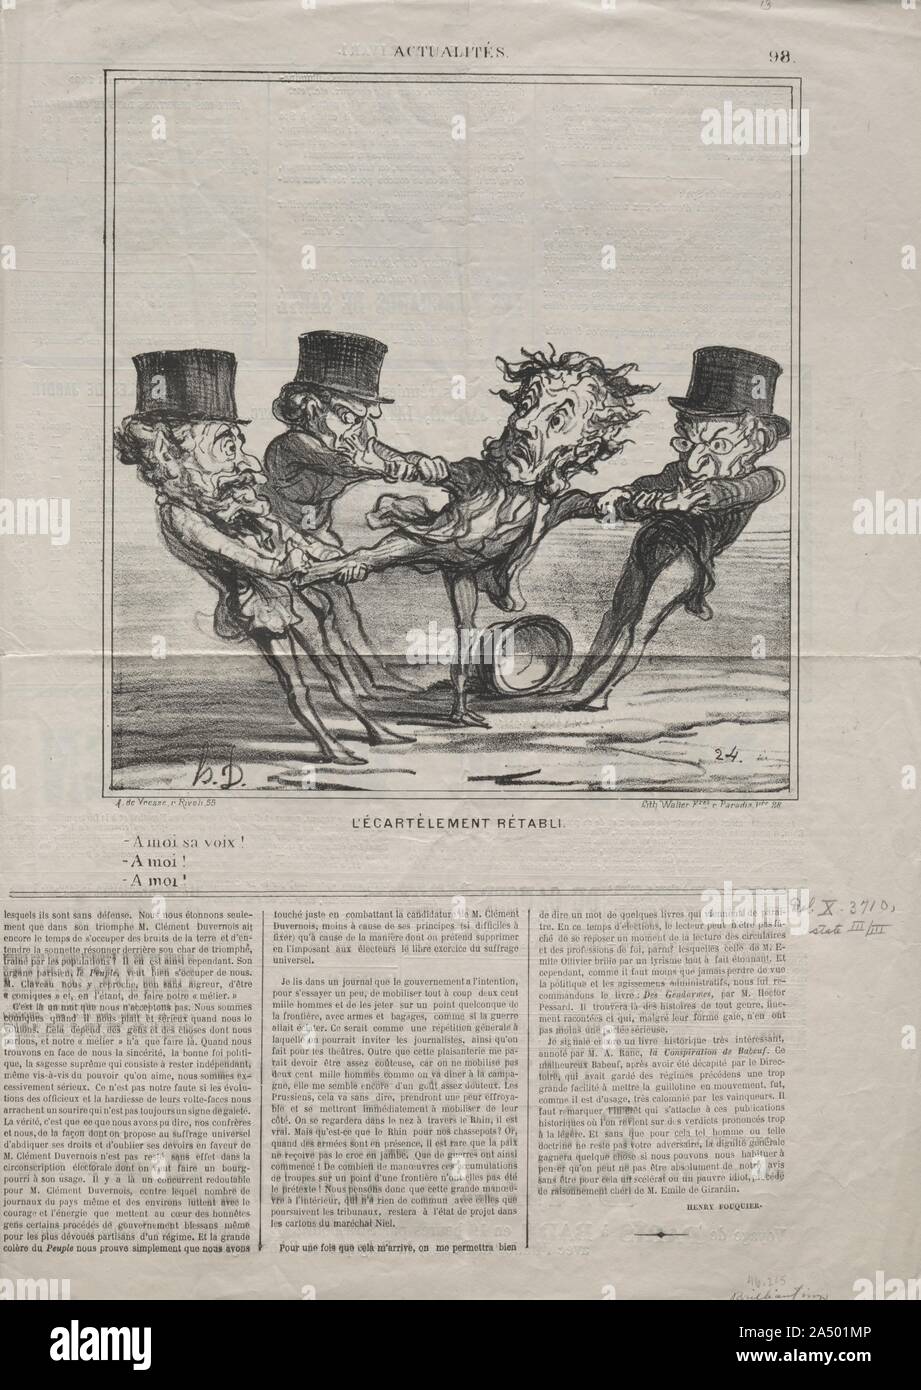 Actualidades (No. 98): El acuartelamiento de reincorporación, 1869. Foto de stock